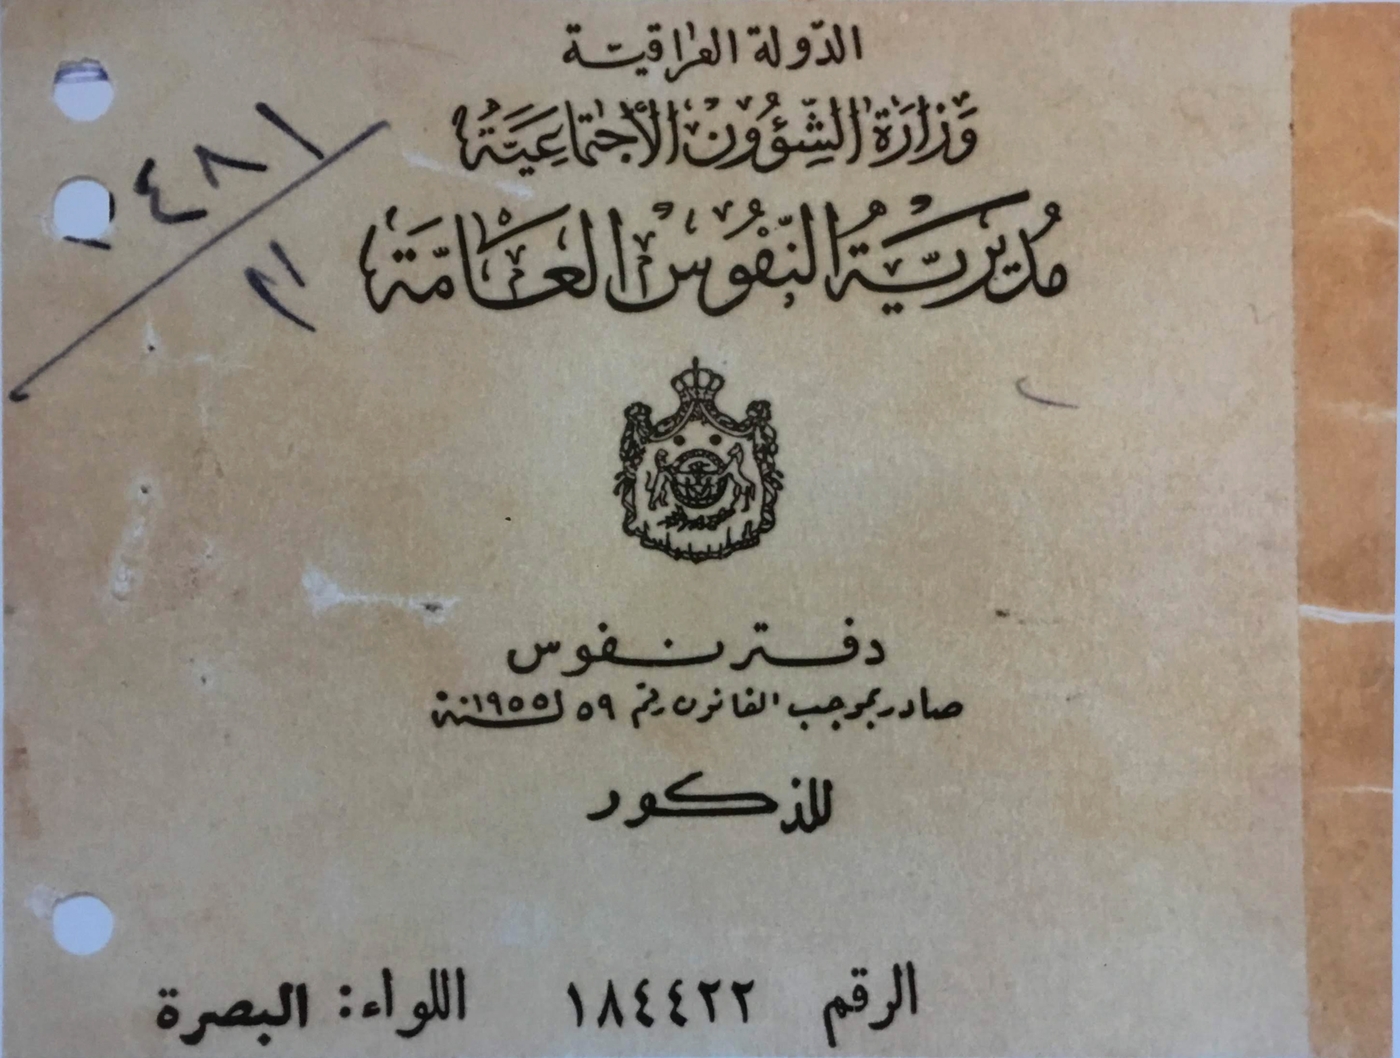 Carta d'Identià, La carta d'identità rilasciata dalle anagrafe irachene nel 1961.

La copertina reca ancora lo stemma della Monarchia irachena nonostante che il paese era diventato Repubblica nel 1958.